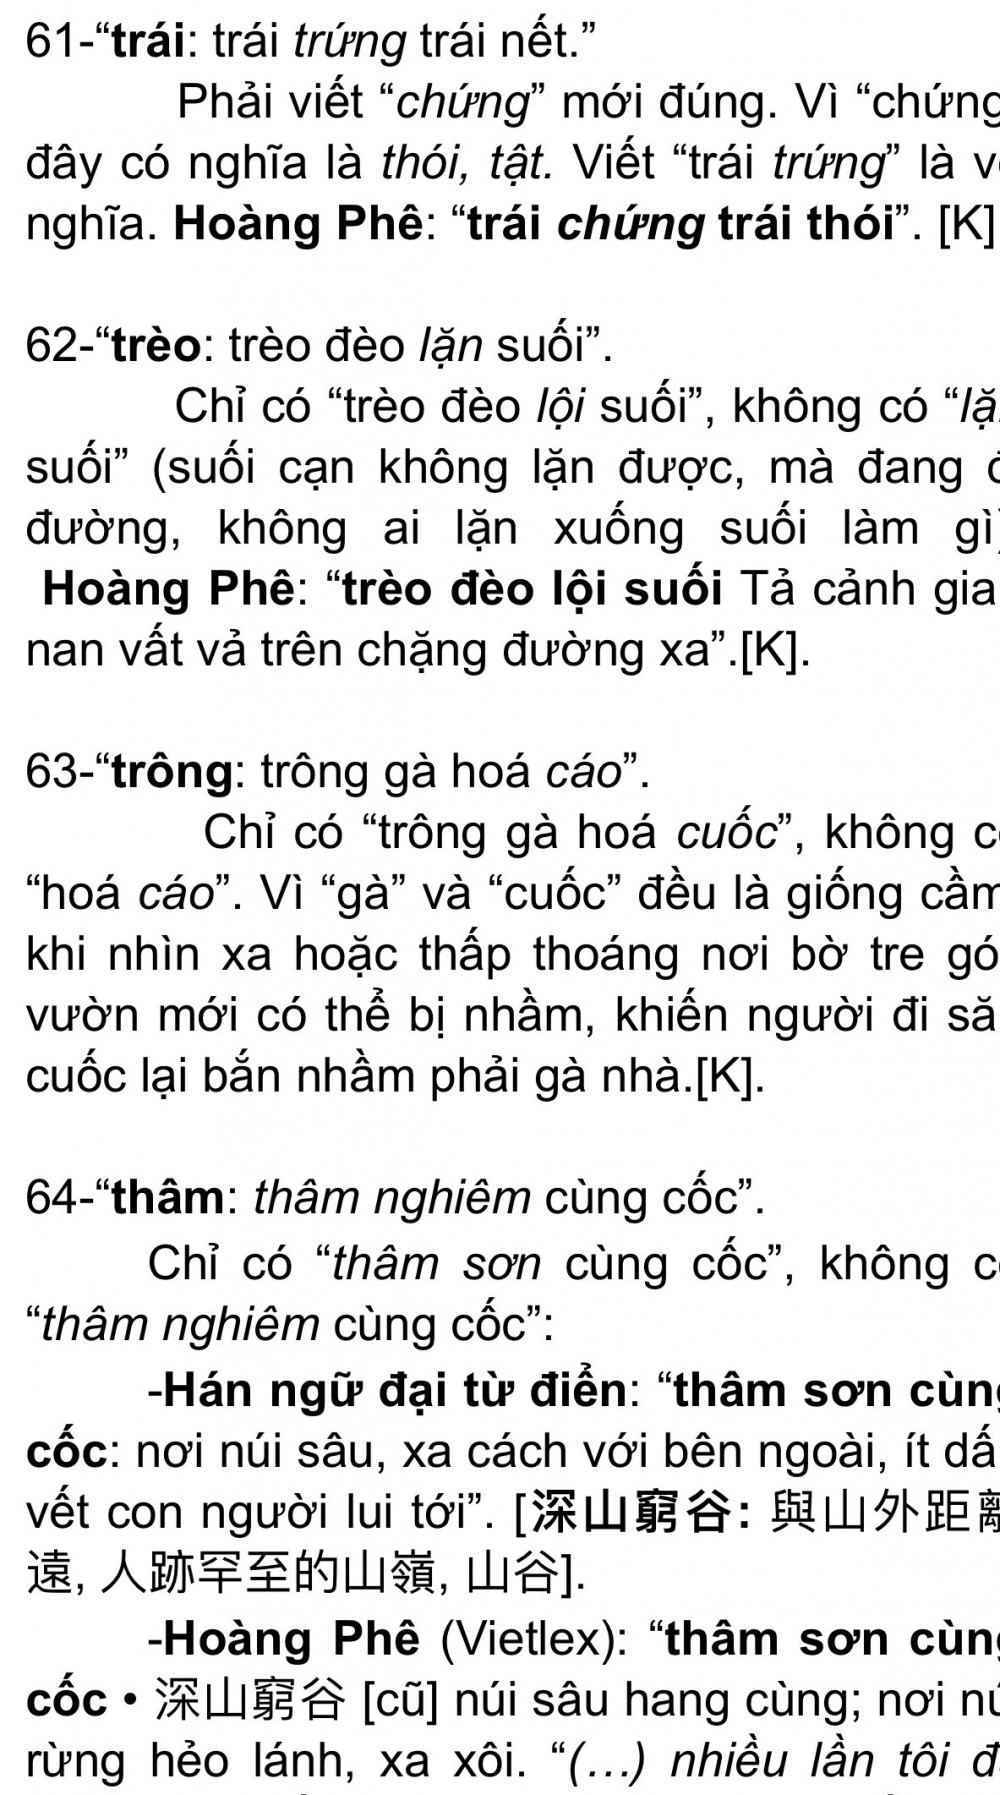 Thêm Một Cuốn Từ Điển Chính Tả Tiếng Việt Bị Thu Hồi: “Rác” Từ Điển – Do  Đâu? - Báo Phụ Nữ